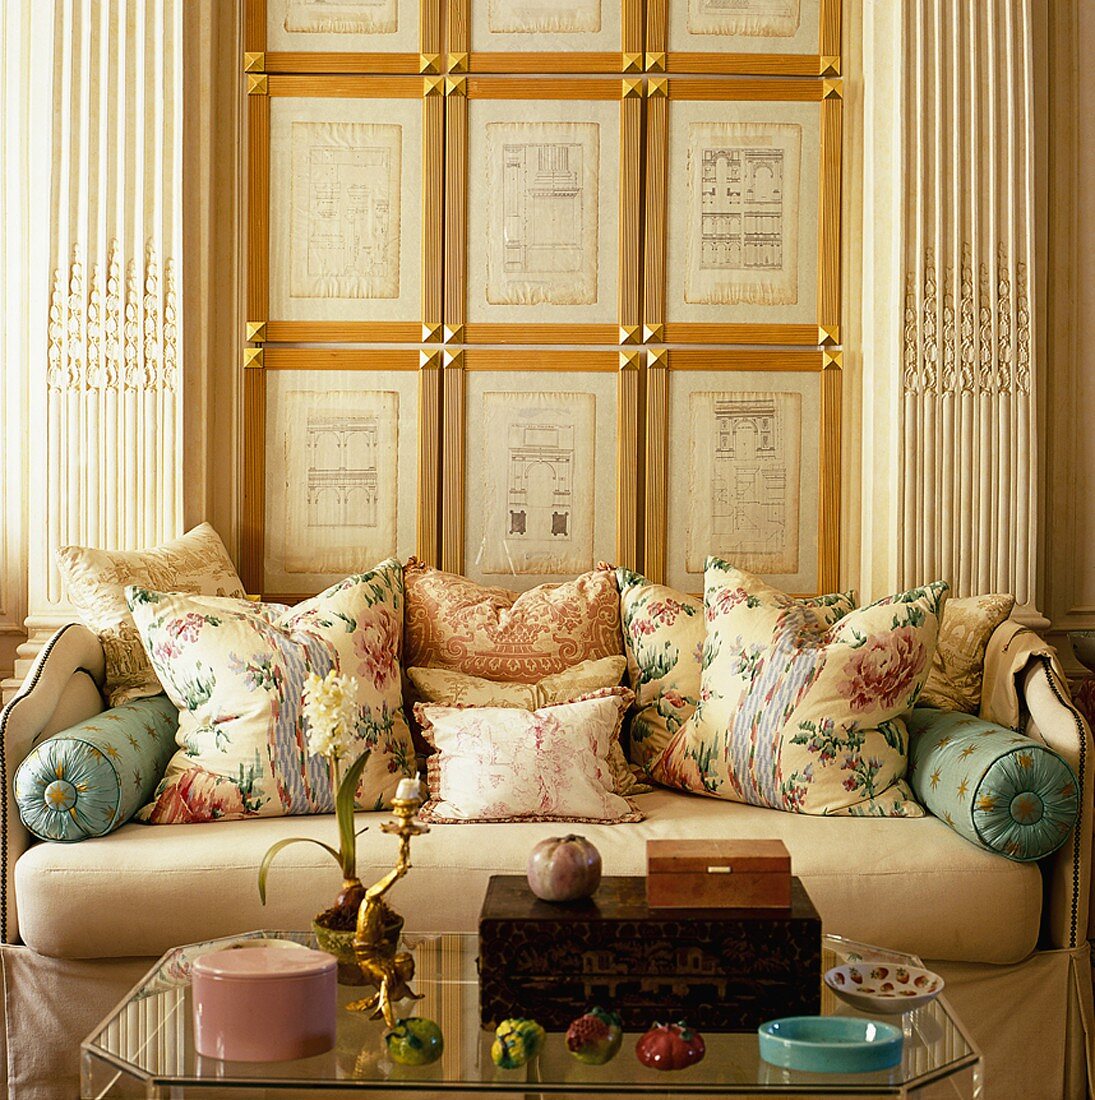 Gerahmte Architekturskizzen zwischen Pilastern, davor ein Sofa mit verschiedenen Kissen und ein gläserner Couchtisch